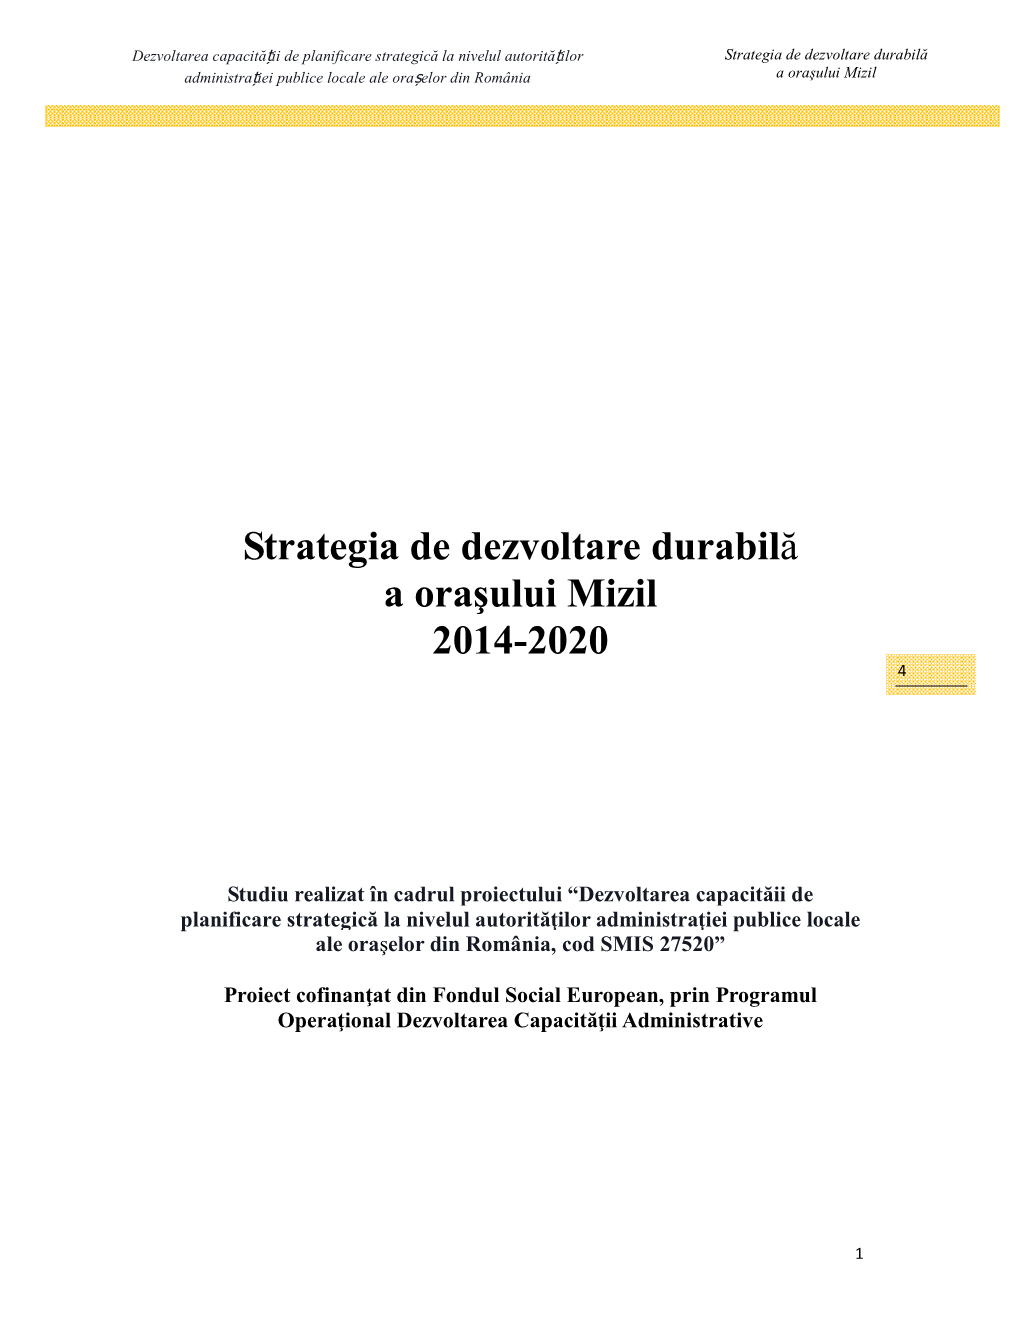 Strategia De Dezvoltare Durabilă a Oraşului Mizil 2014-2020